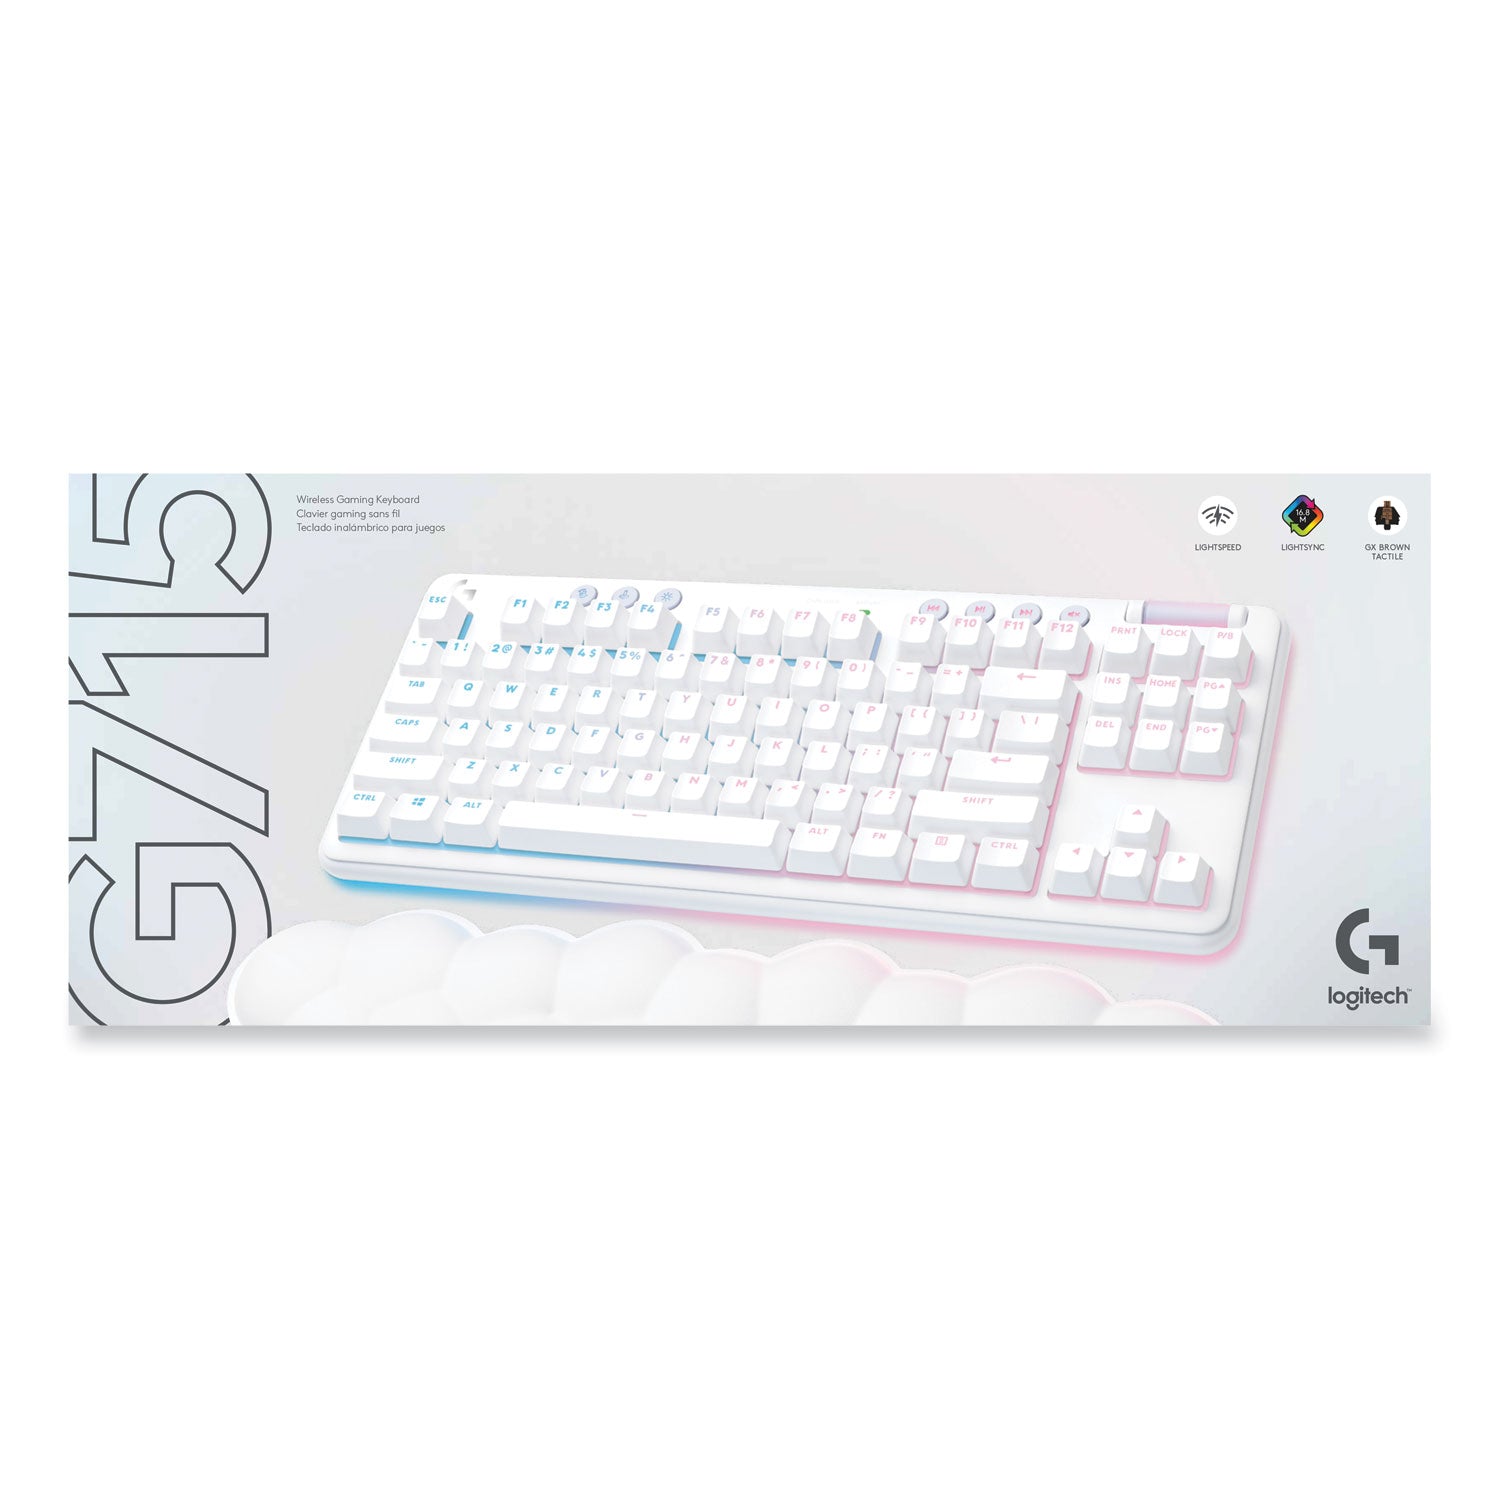 g715-wireless-gaming-keyboard-87-keys-white_log920010453 - 3